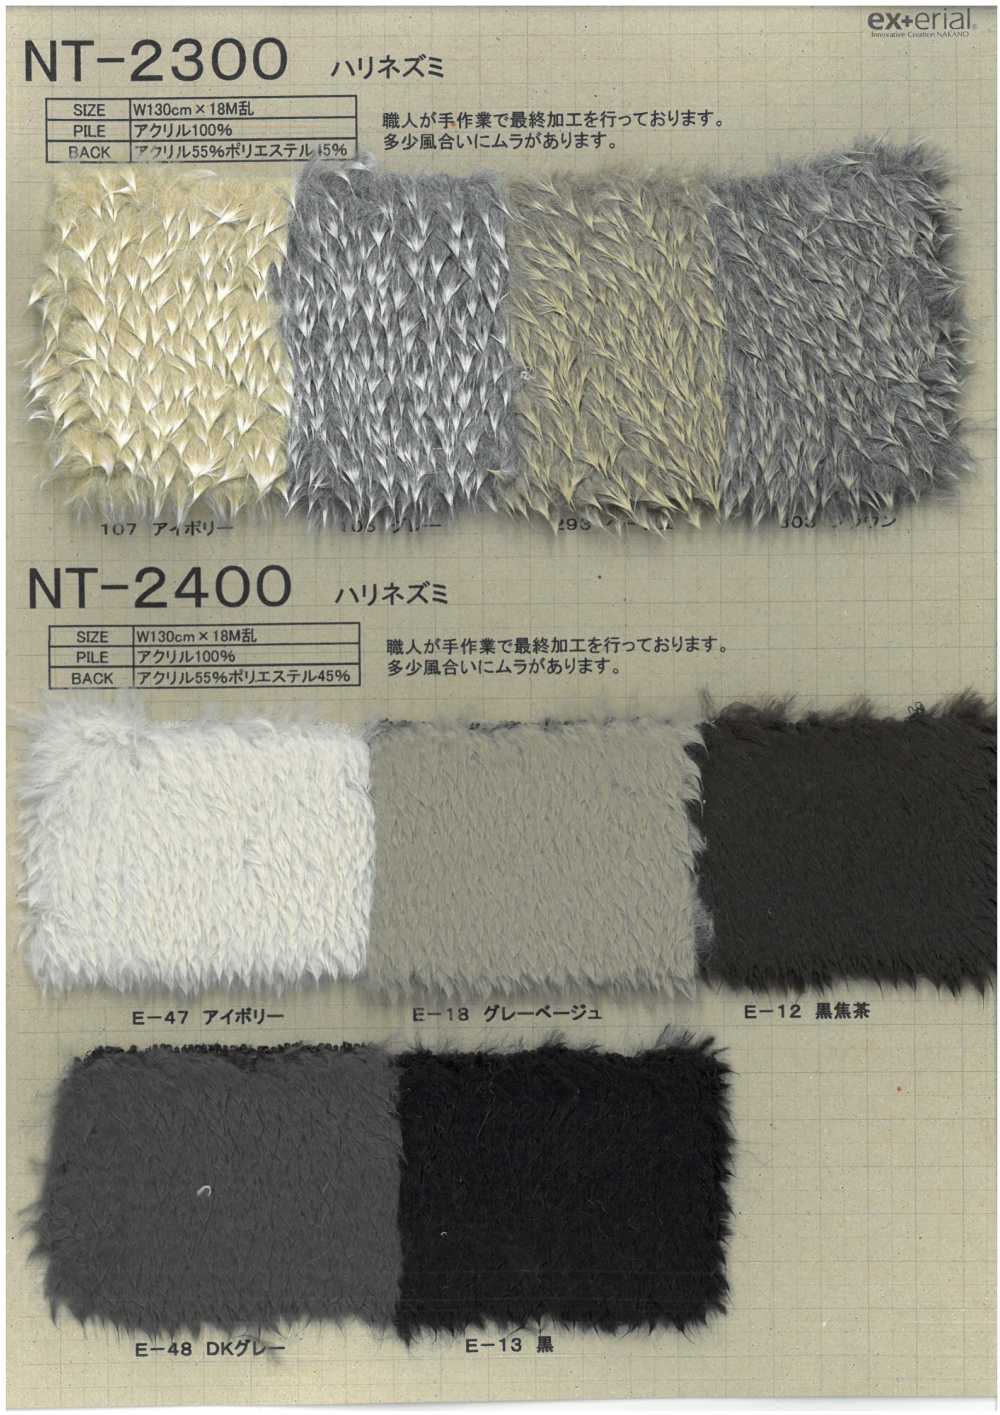 NT-2300 Fourrure Artisanale [Hérisson][Fabrication De Textile] Industrie Du Jersey Nakano